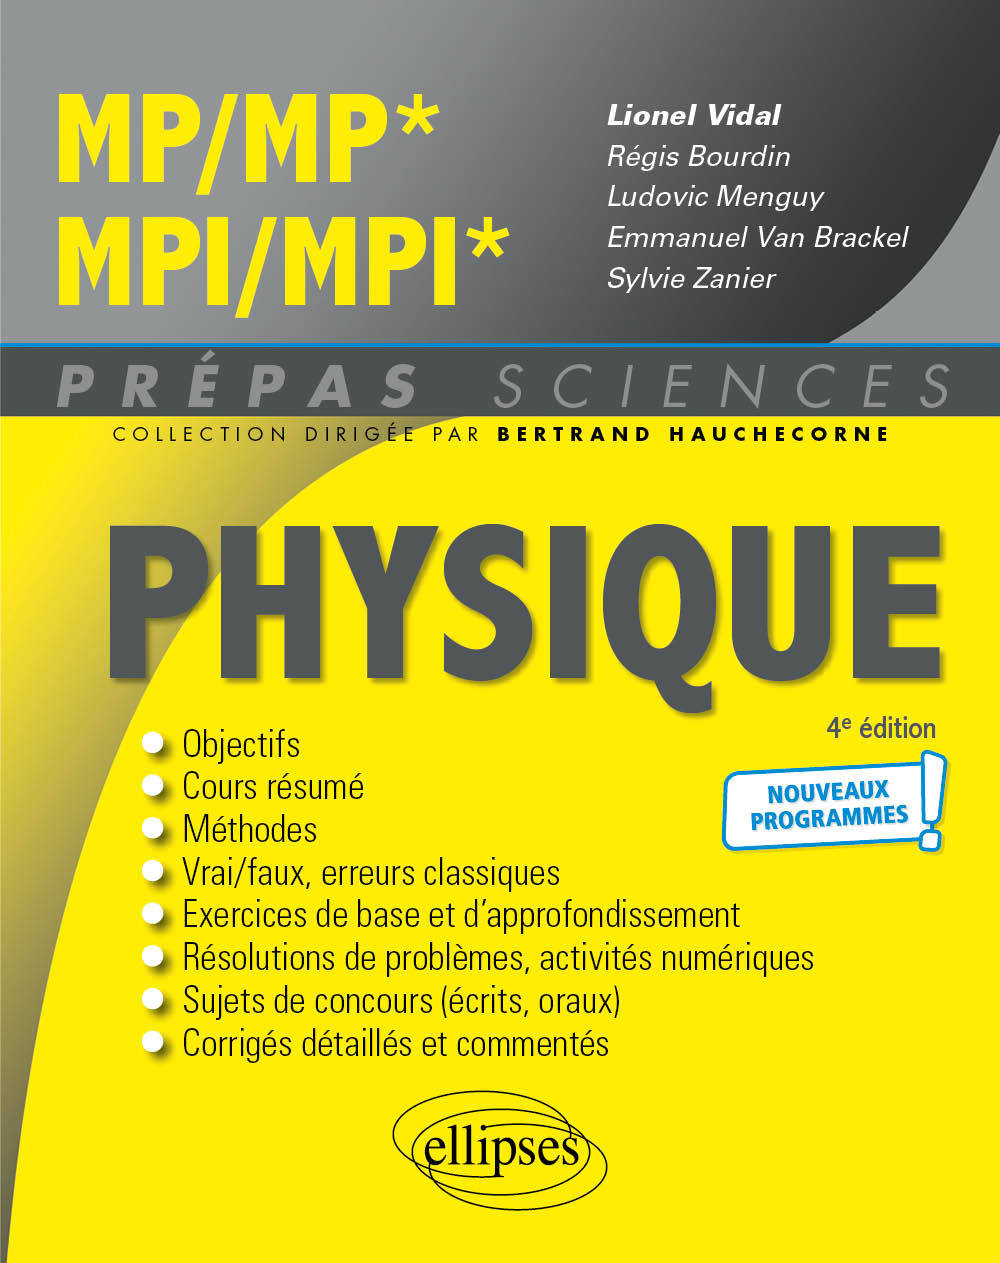 Kniha Physique MP/MP* MPI/MPI* - Programme 2022 Vidal